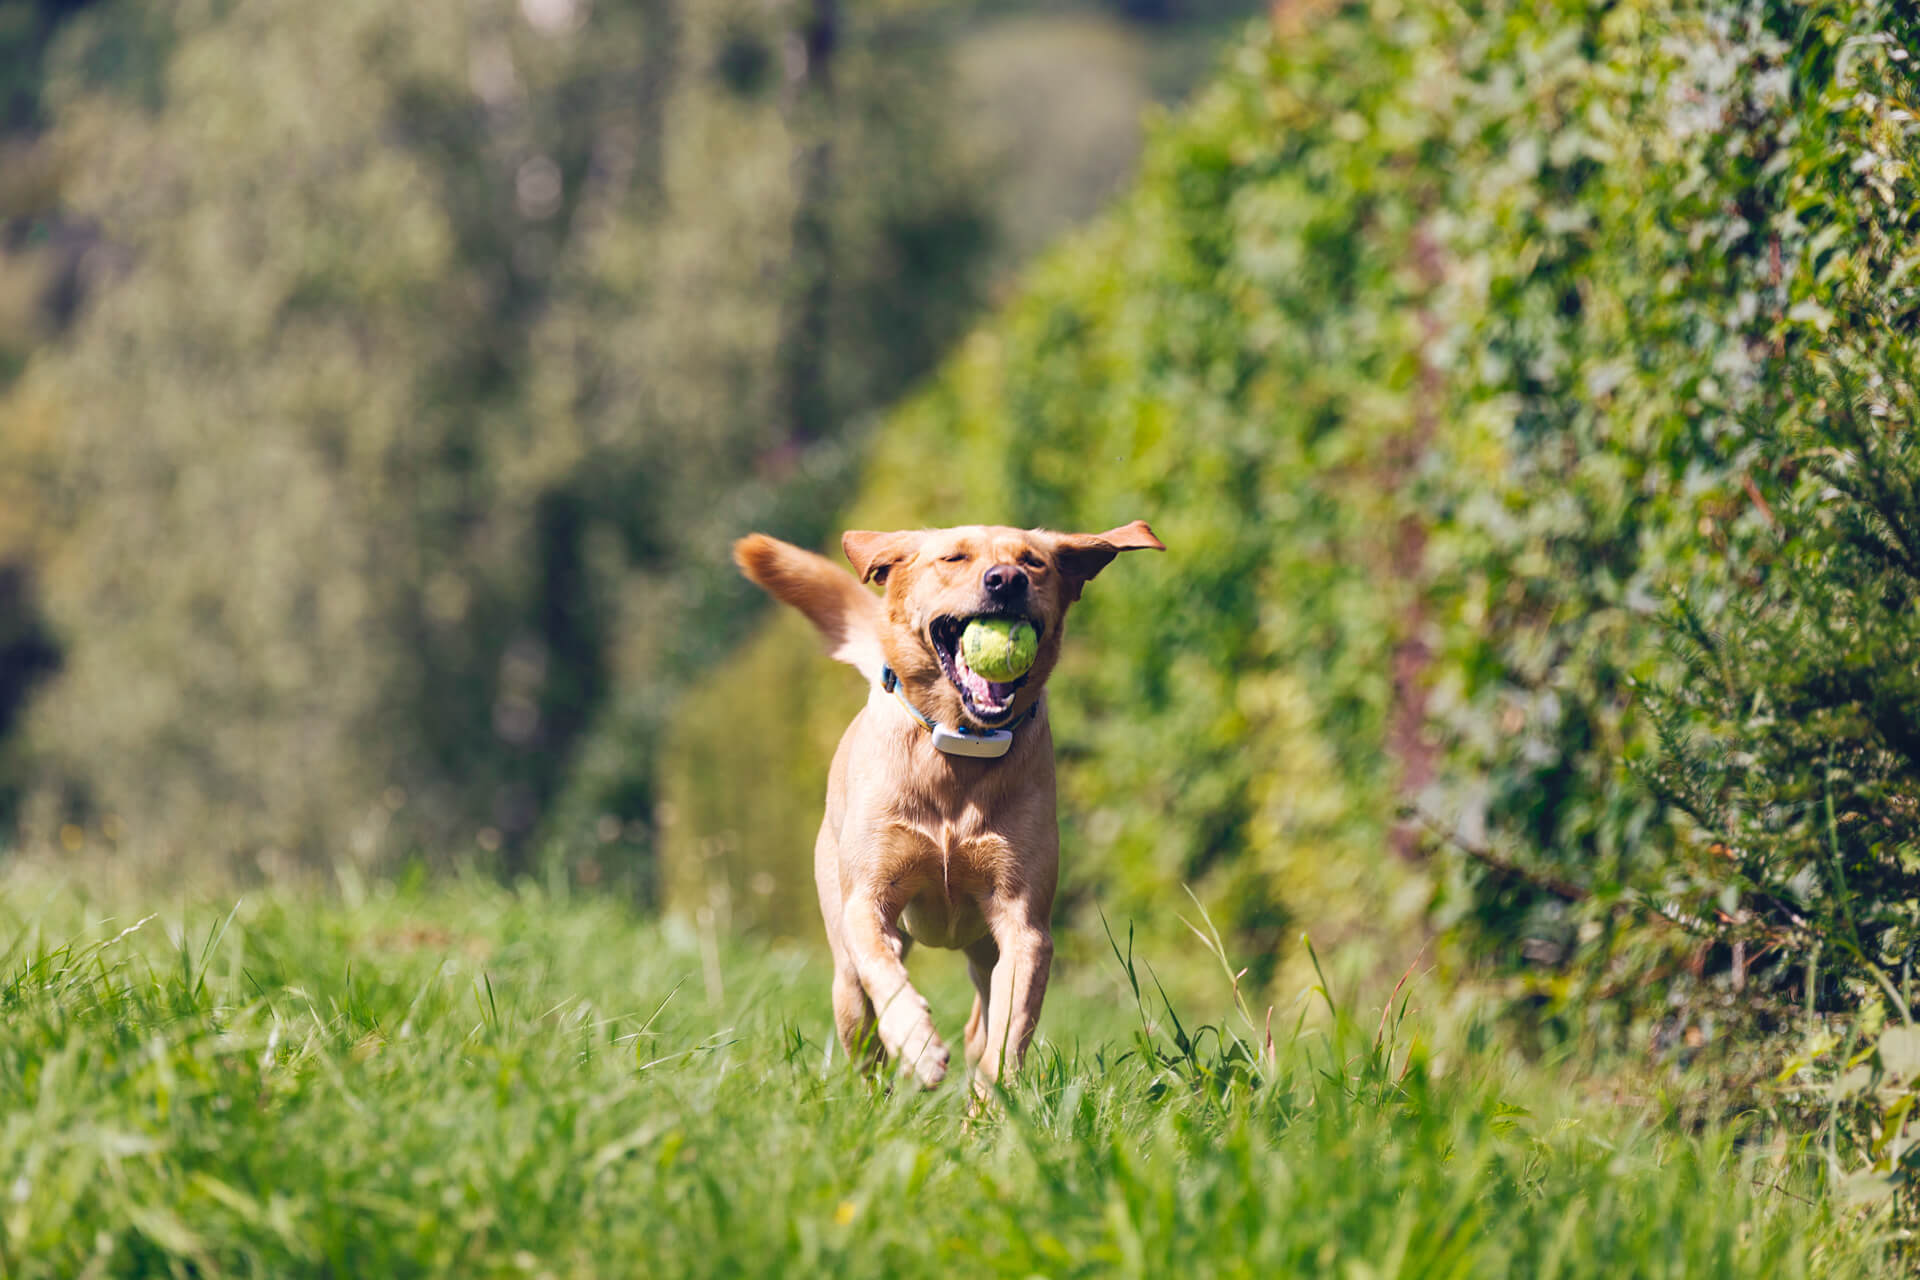 brun hund som springer utomhus på gräs med en tennisboll i munnen